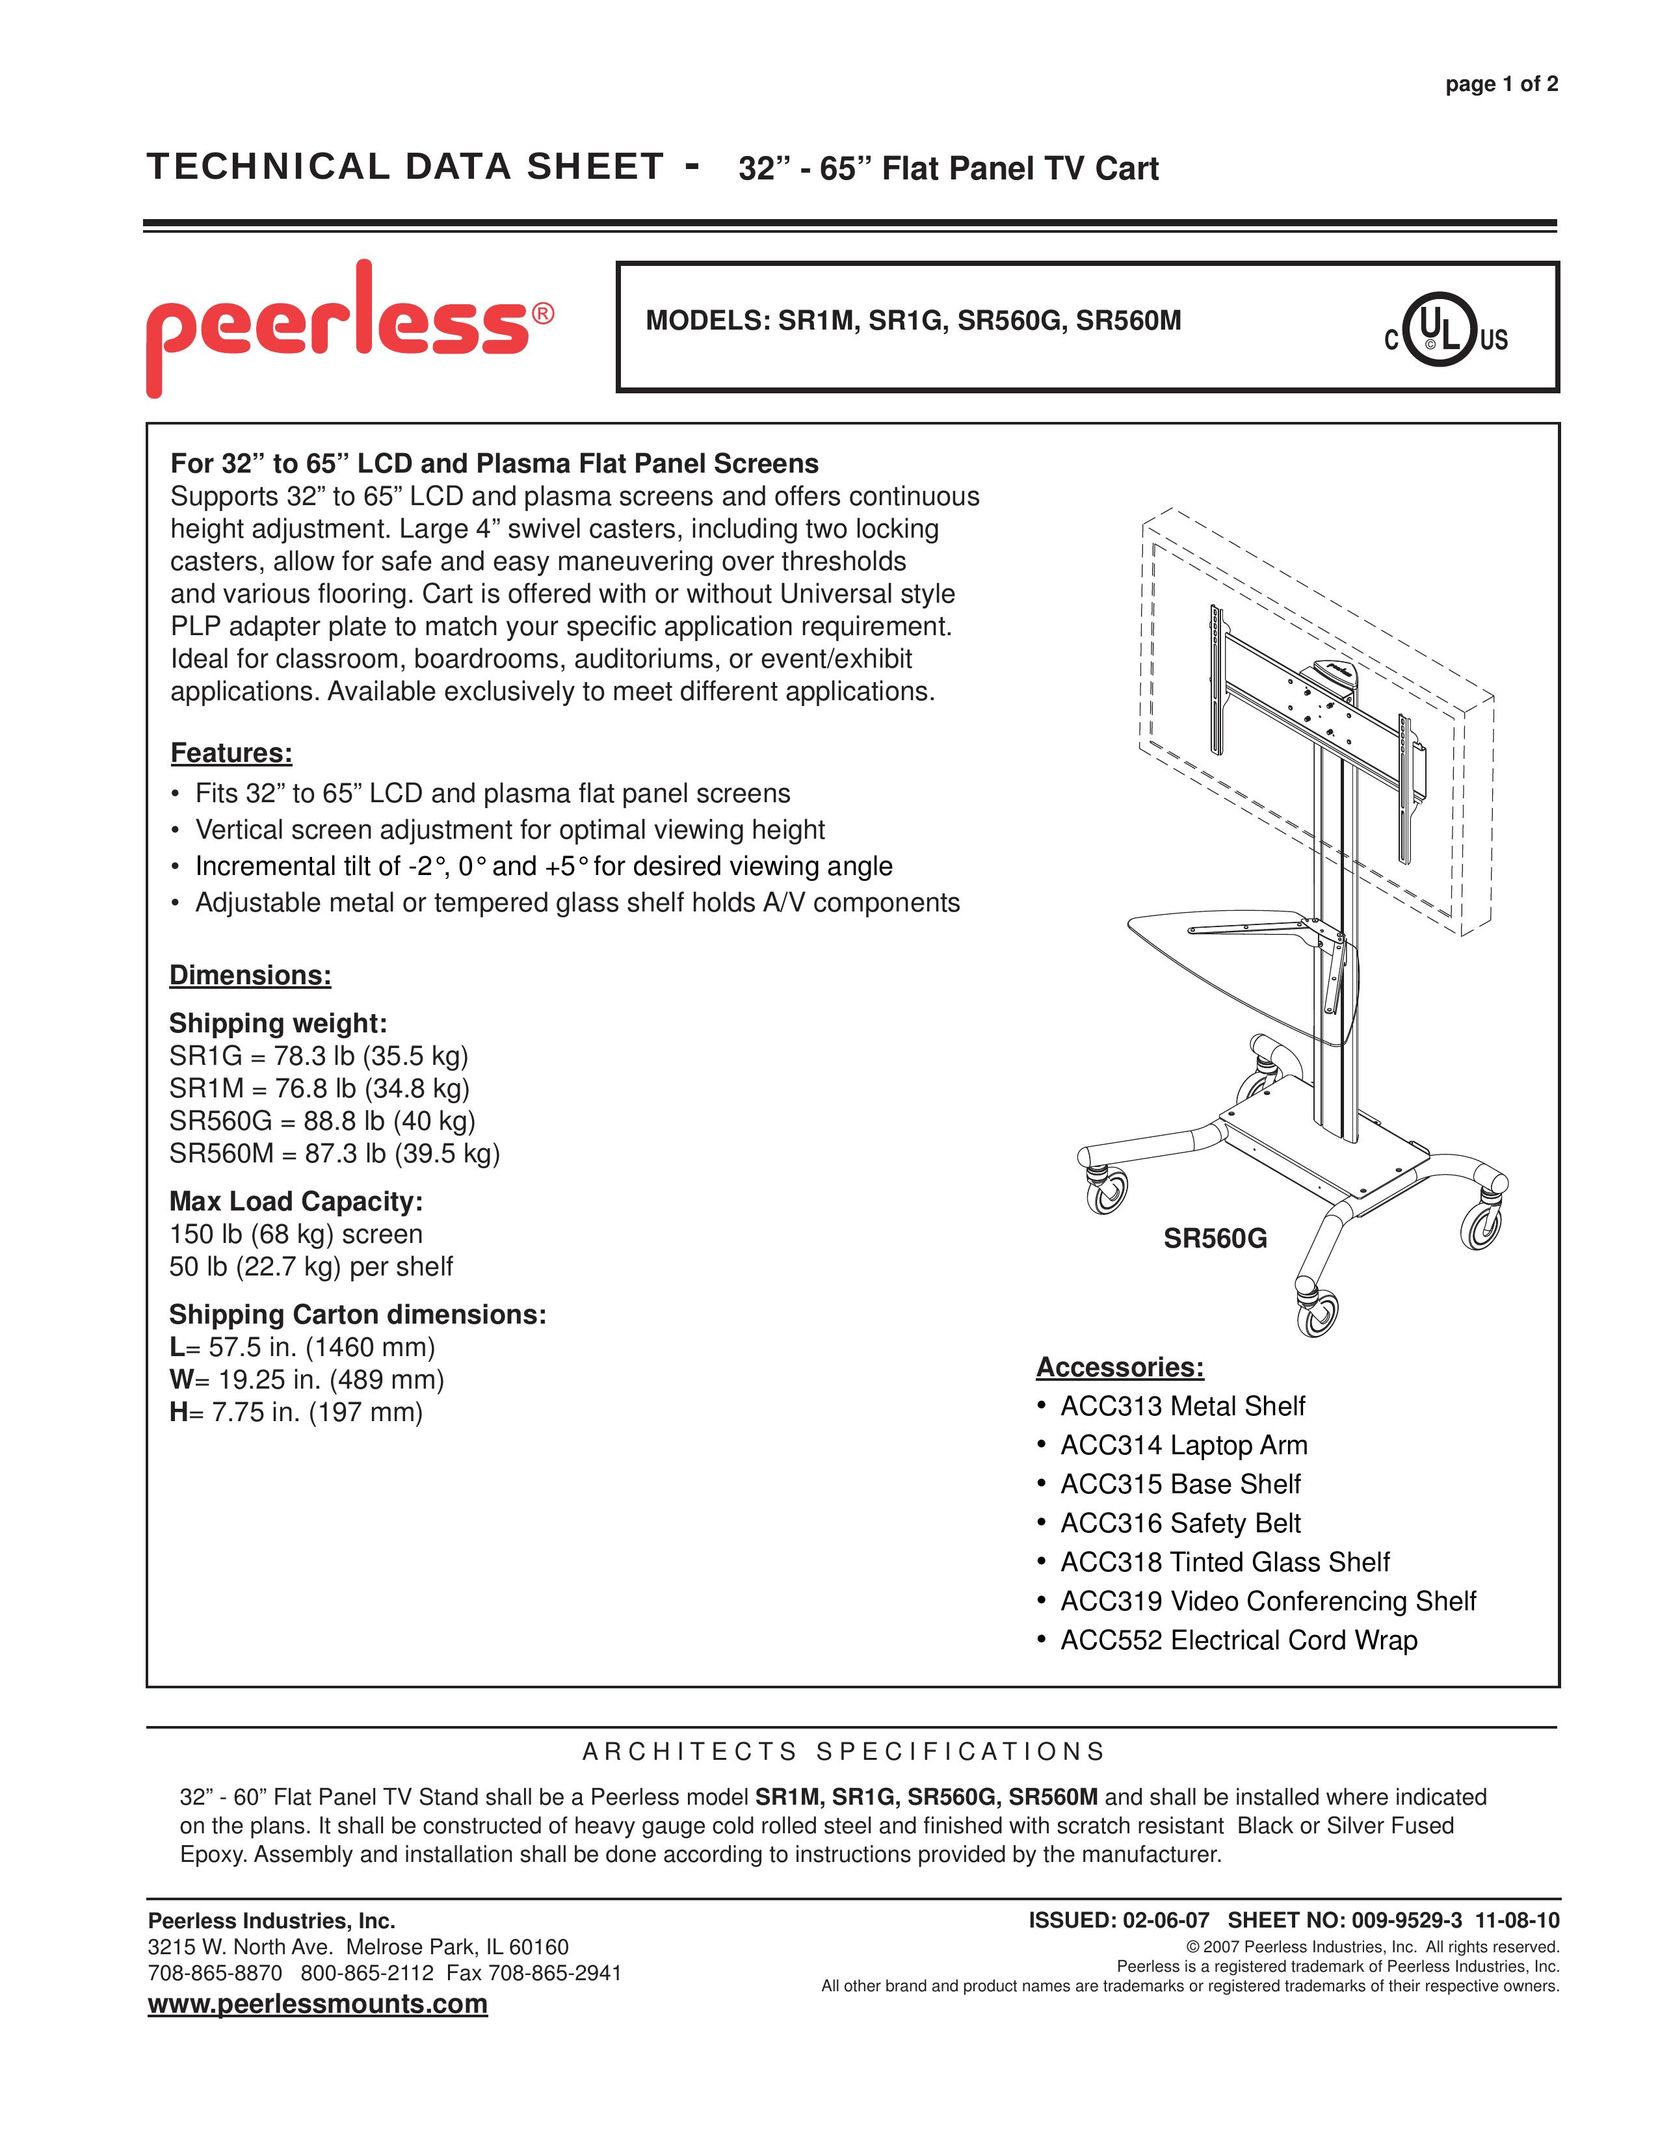 Peerless Industries SR1M Indoor Furnishings User Manual